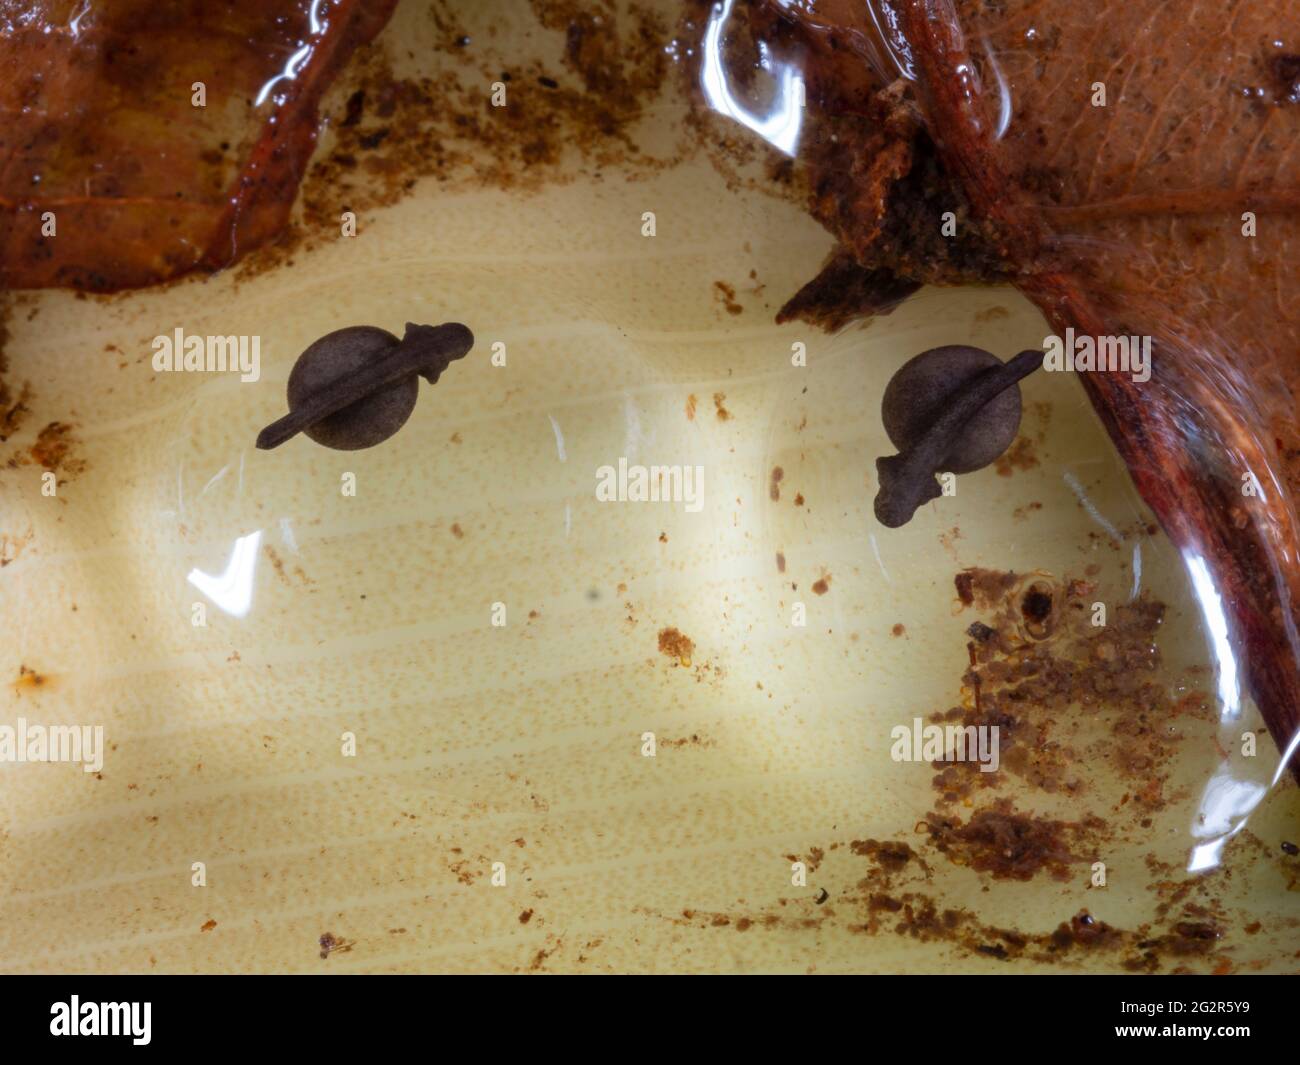 Desarrollar huevos de la rana venenosa de rayas amarillas (Ranitomeya variabilis) en una bráctea de hoja bromeliada, provincia de Napo, Euador Foto de stock